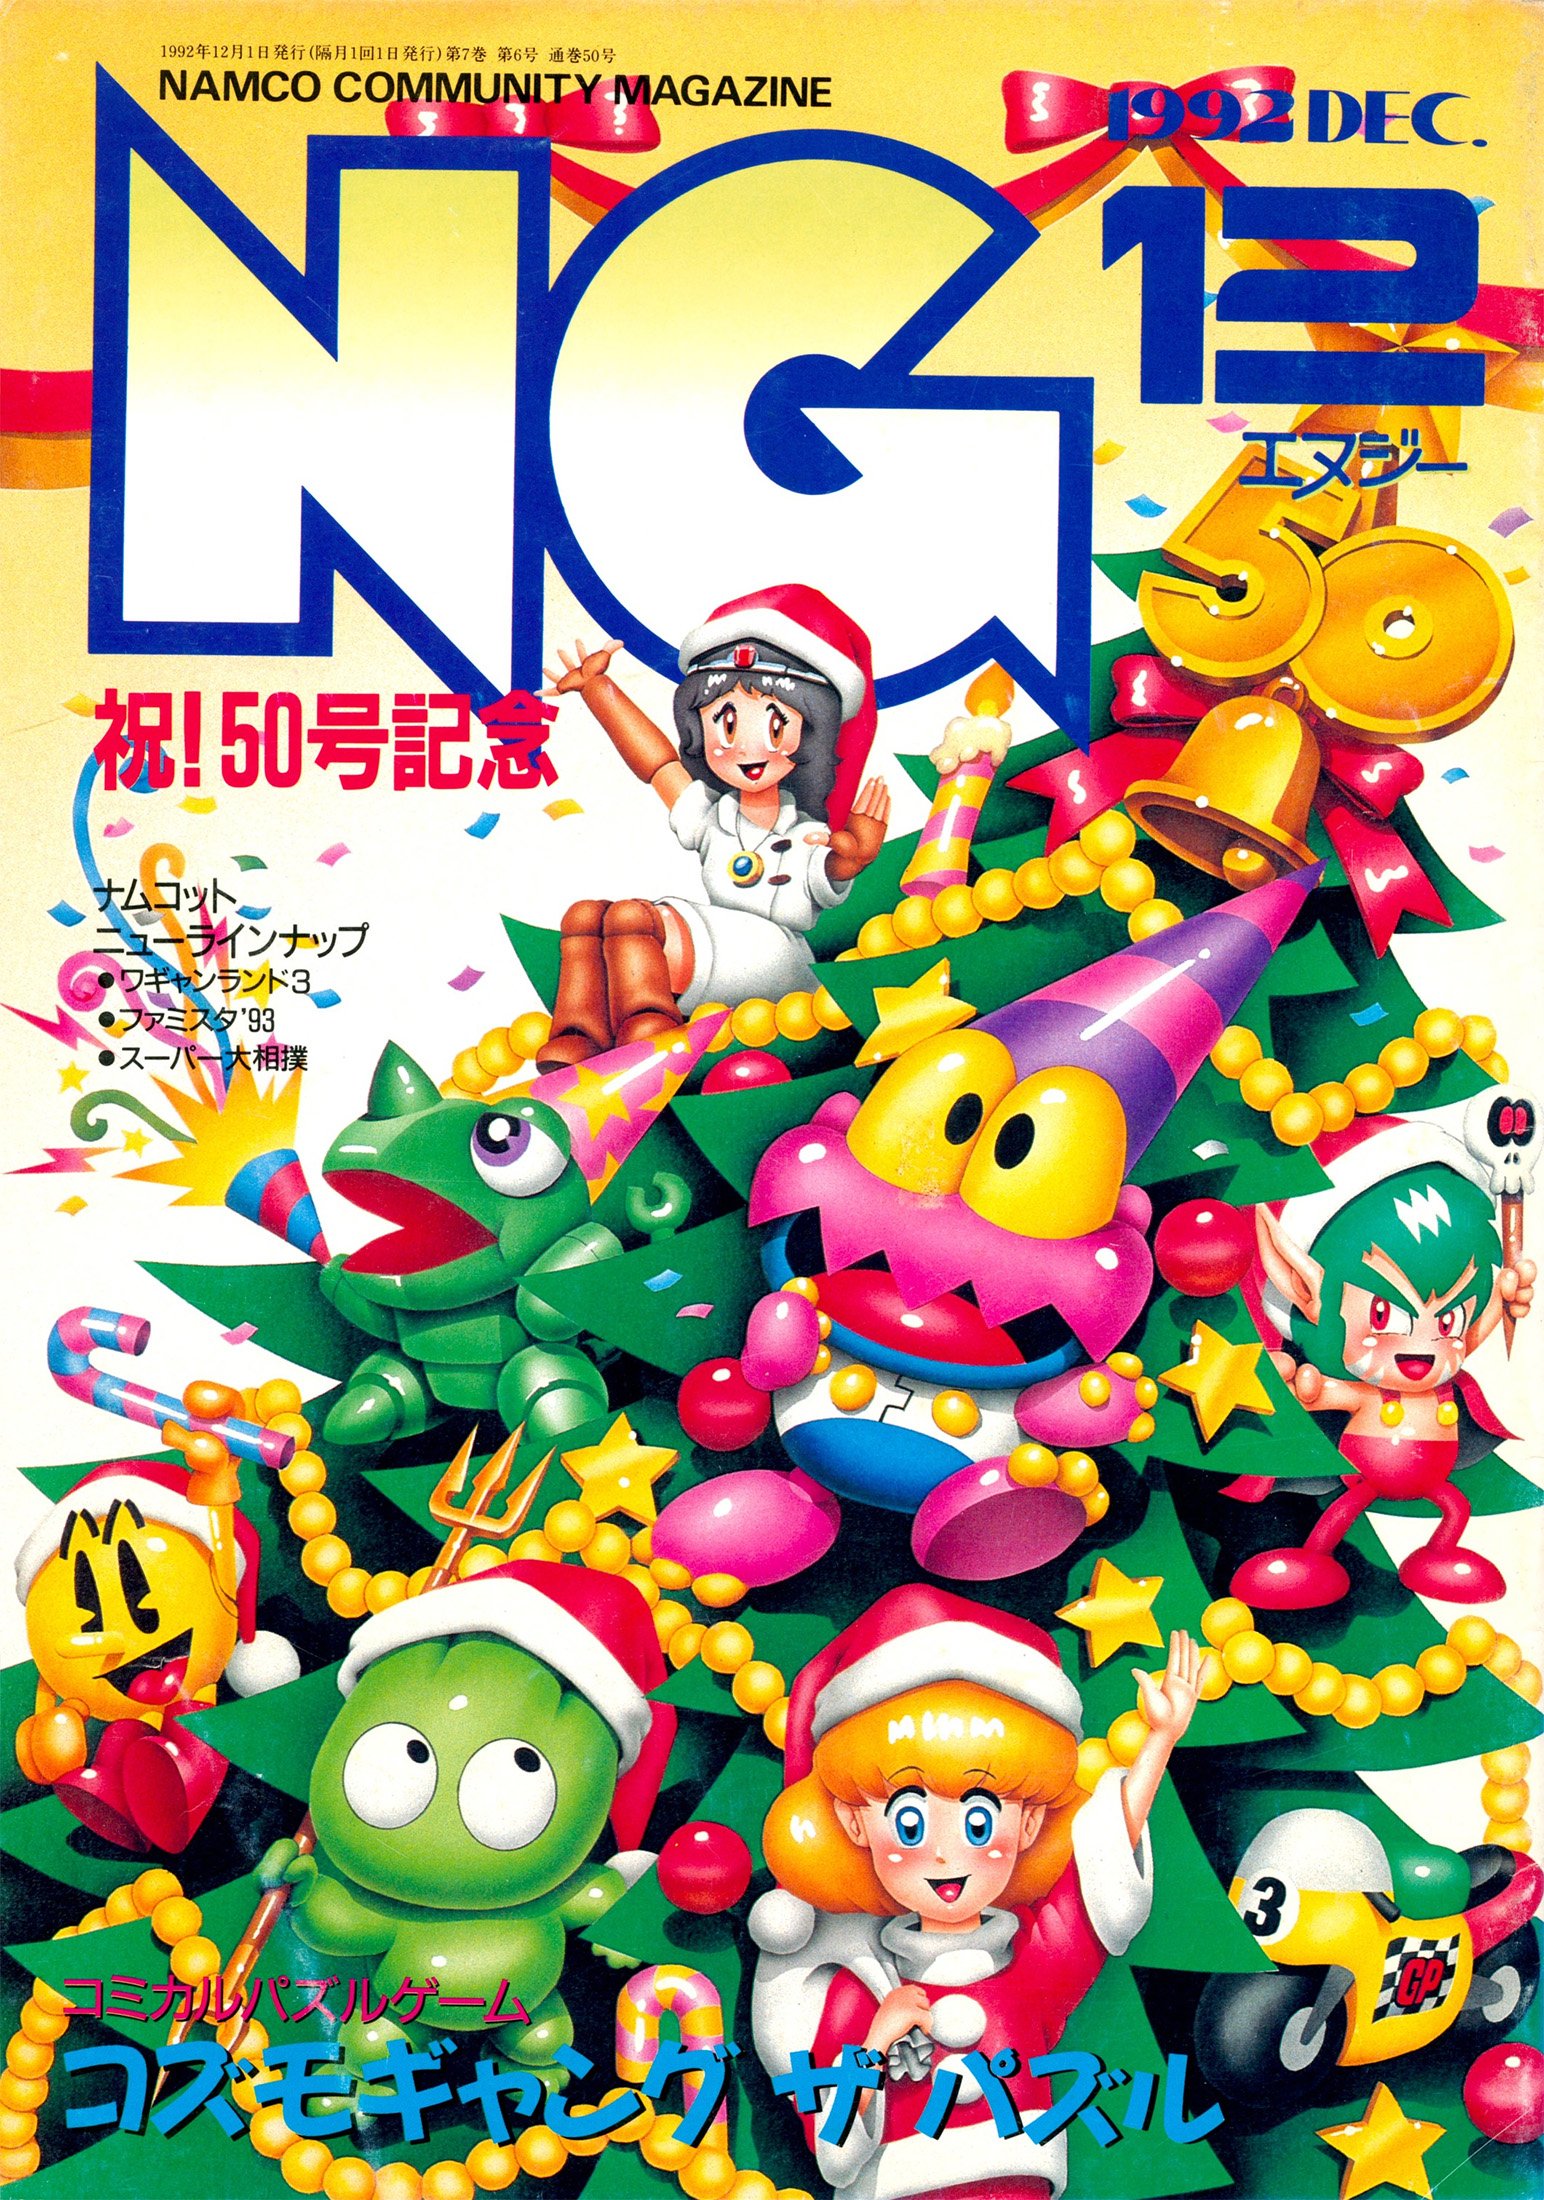 large.1714882119_NGNamcoCommunityMagazine(MonthlyIssue50)-December1992.jpg